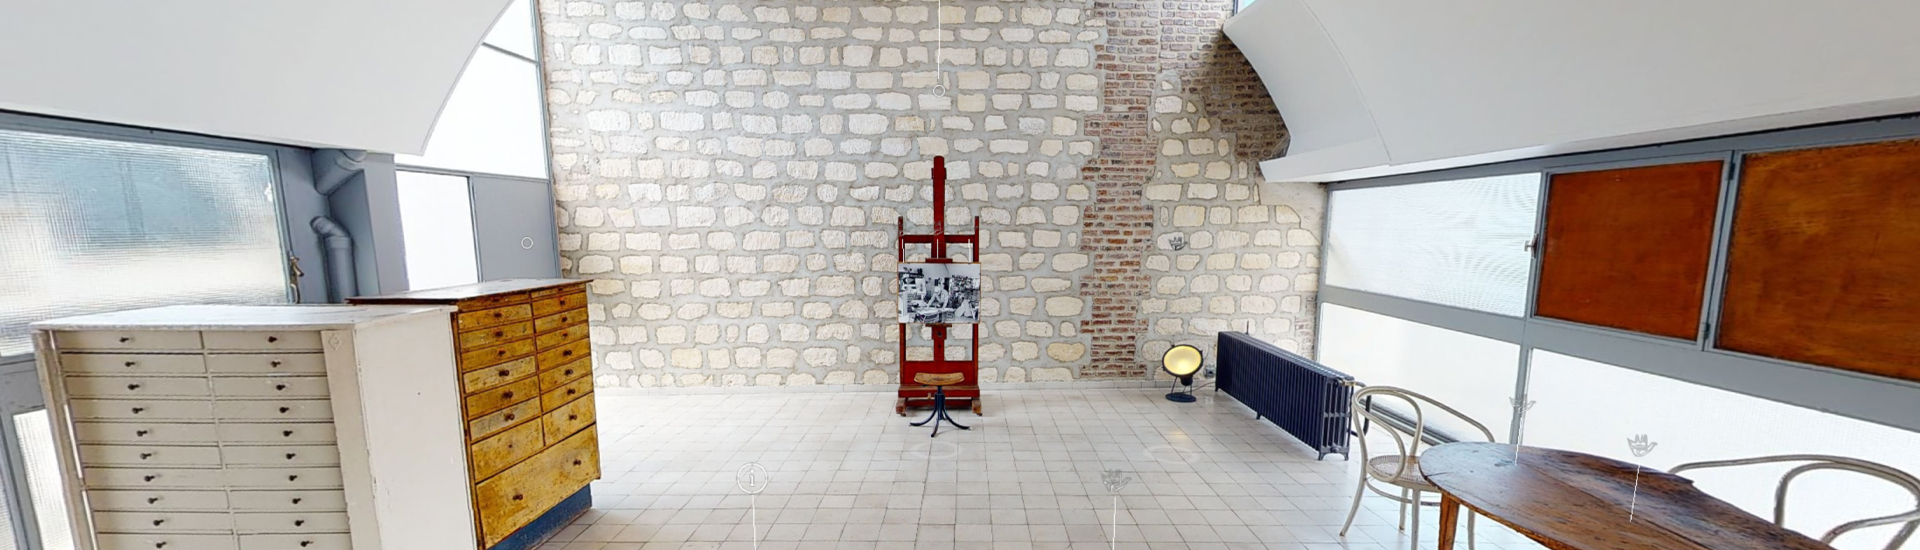 Visite-virtuelle de l'appartement-atelier de Le Corbusier © FLC / ADAGP / Notoryou